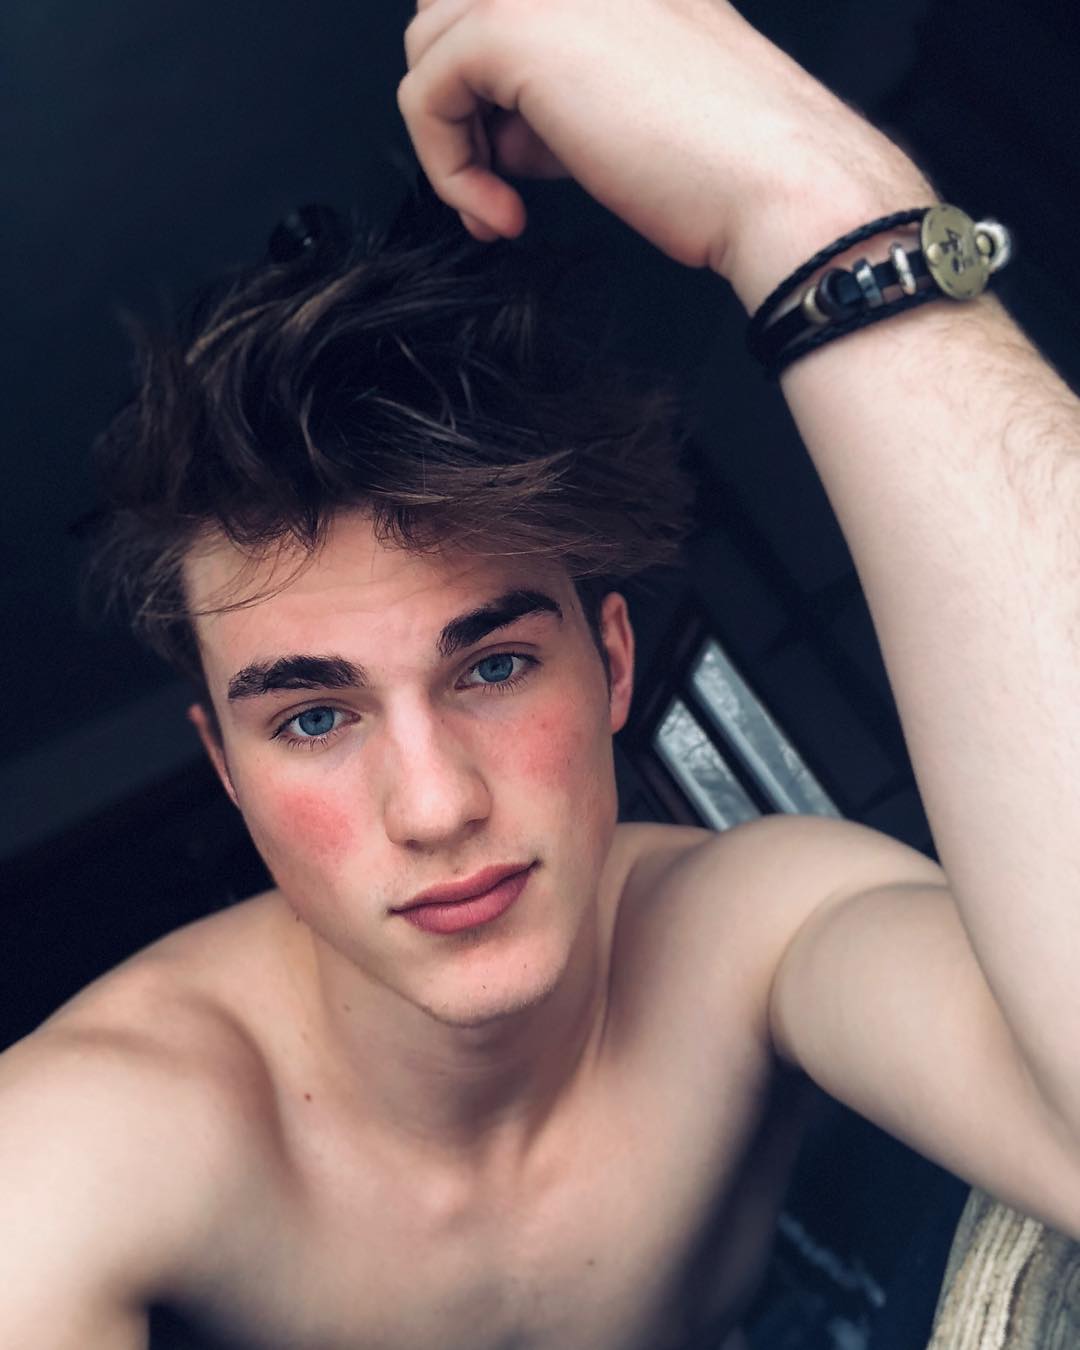 Beauty and Body of Male : Zach Cox (@zachhcox) on Instagram 